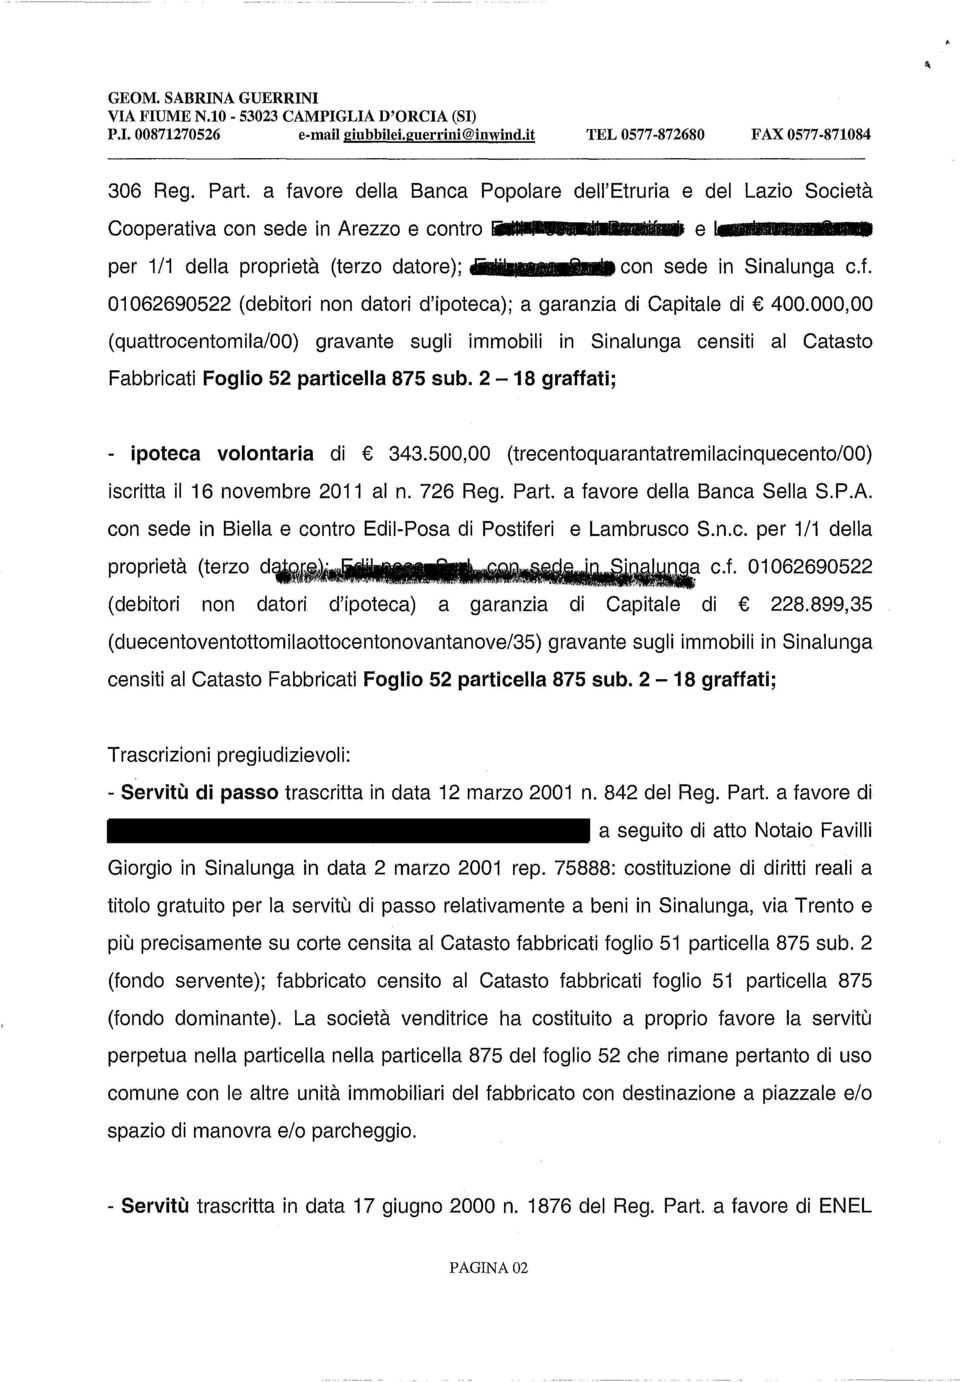 000,00 (quattrocentomila/00) gravante sugli immobili in Sinalunga censiti al Catasto Fabbricati Foglio 52 particella 875 sub. 2-18 graffati; - ipoteca volontaria di 343.